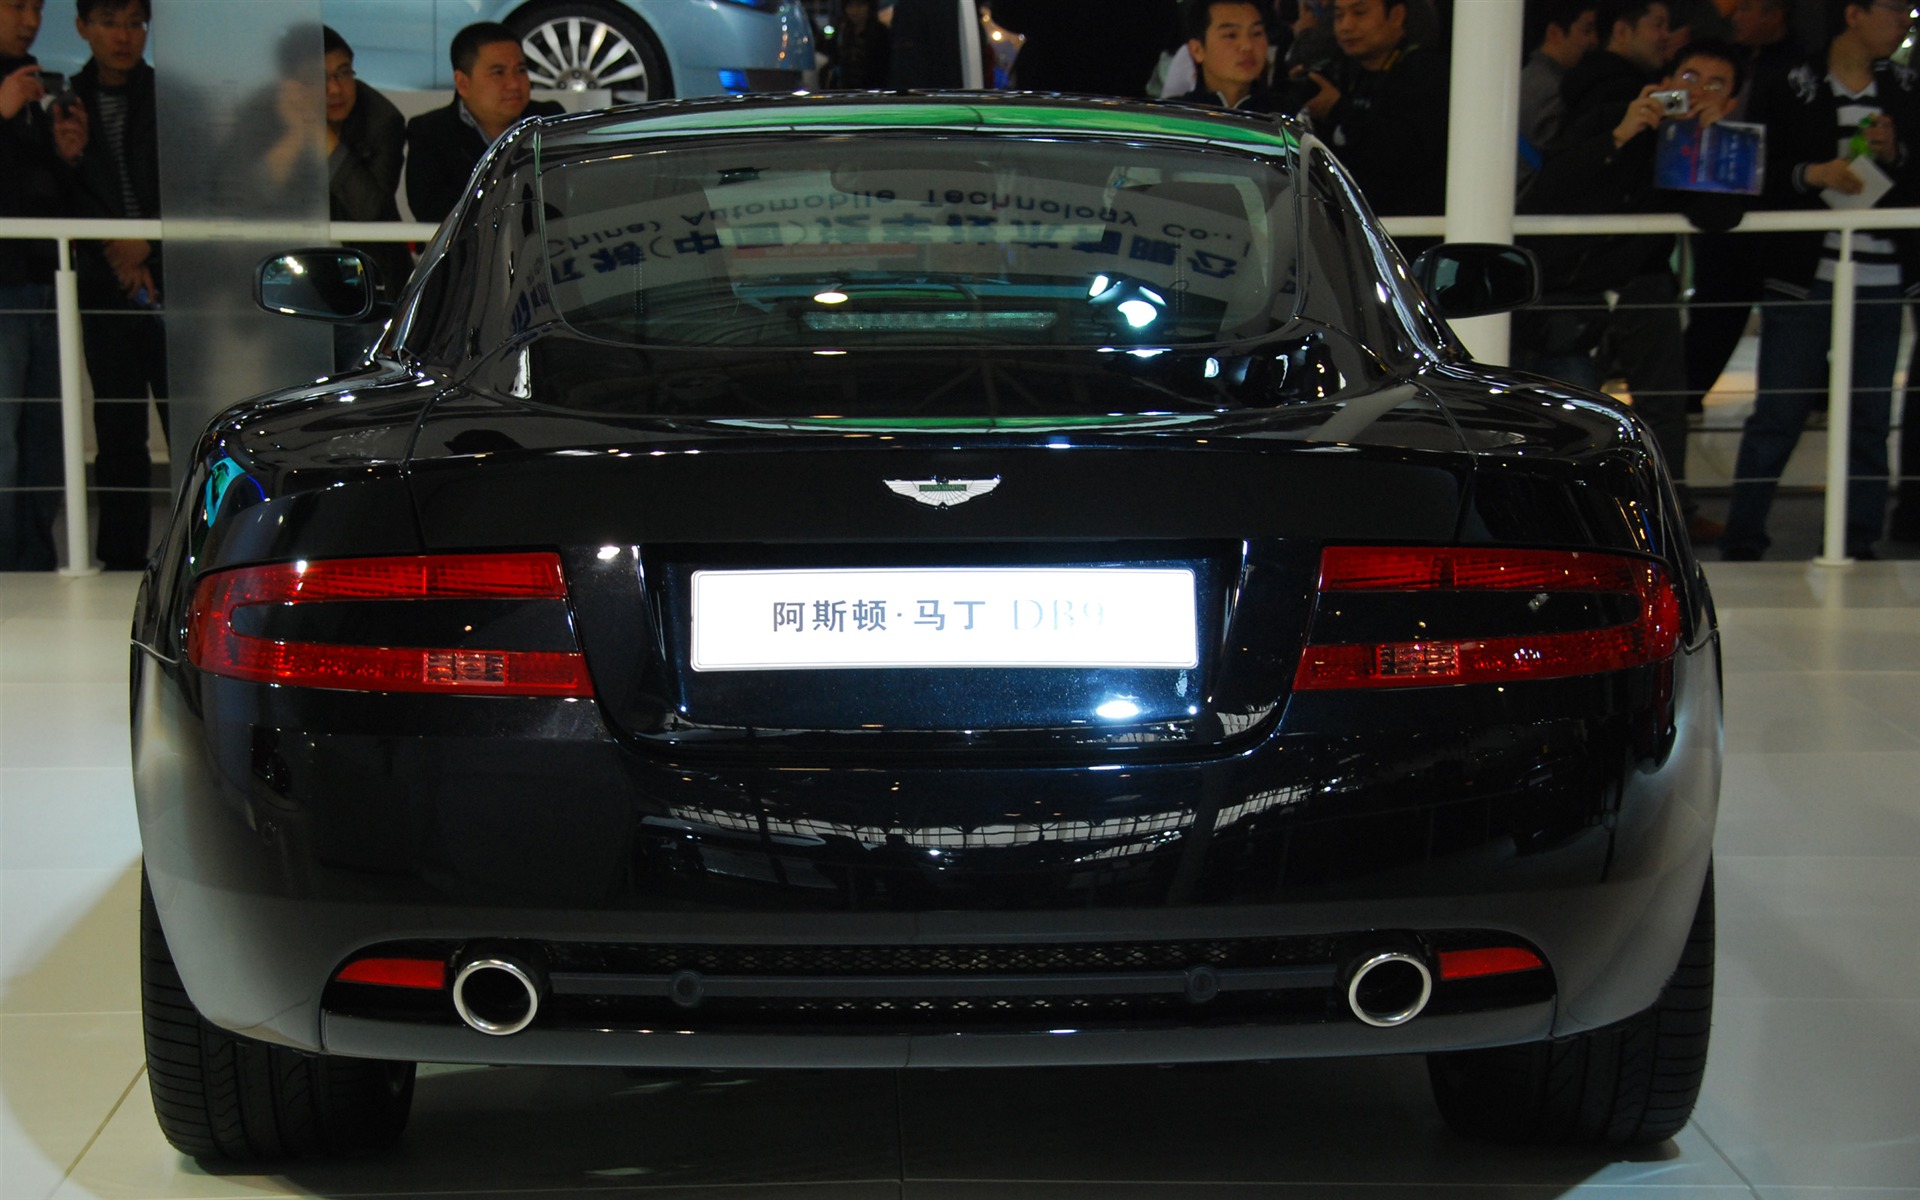 2010北京国际车展(一) (z321x123作品)30 - 1920x1200